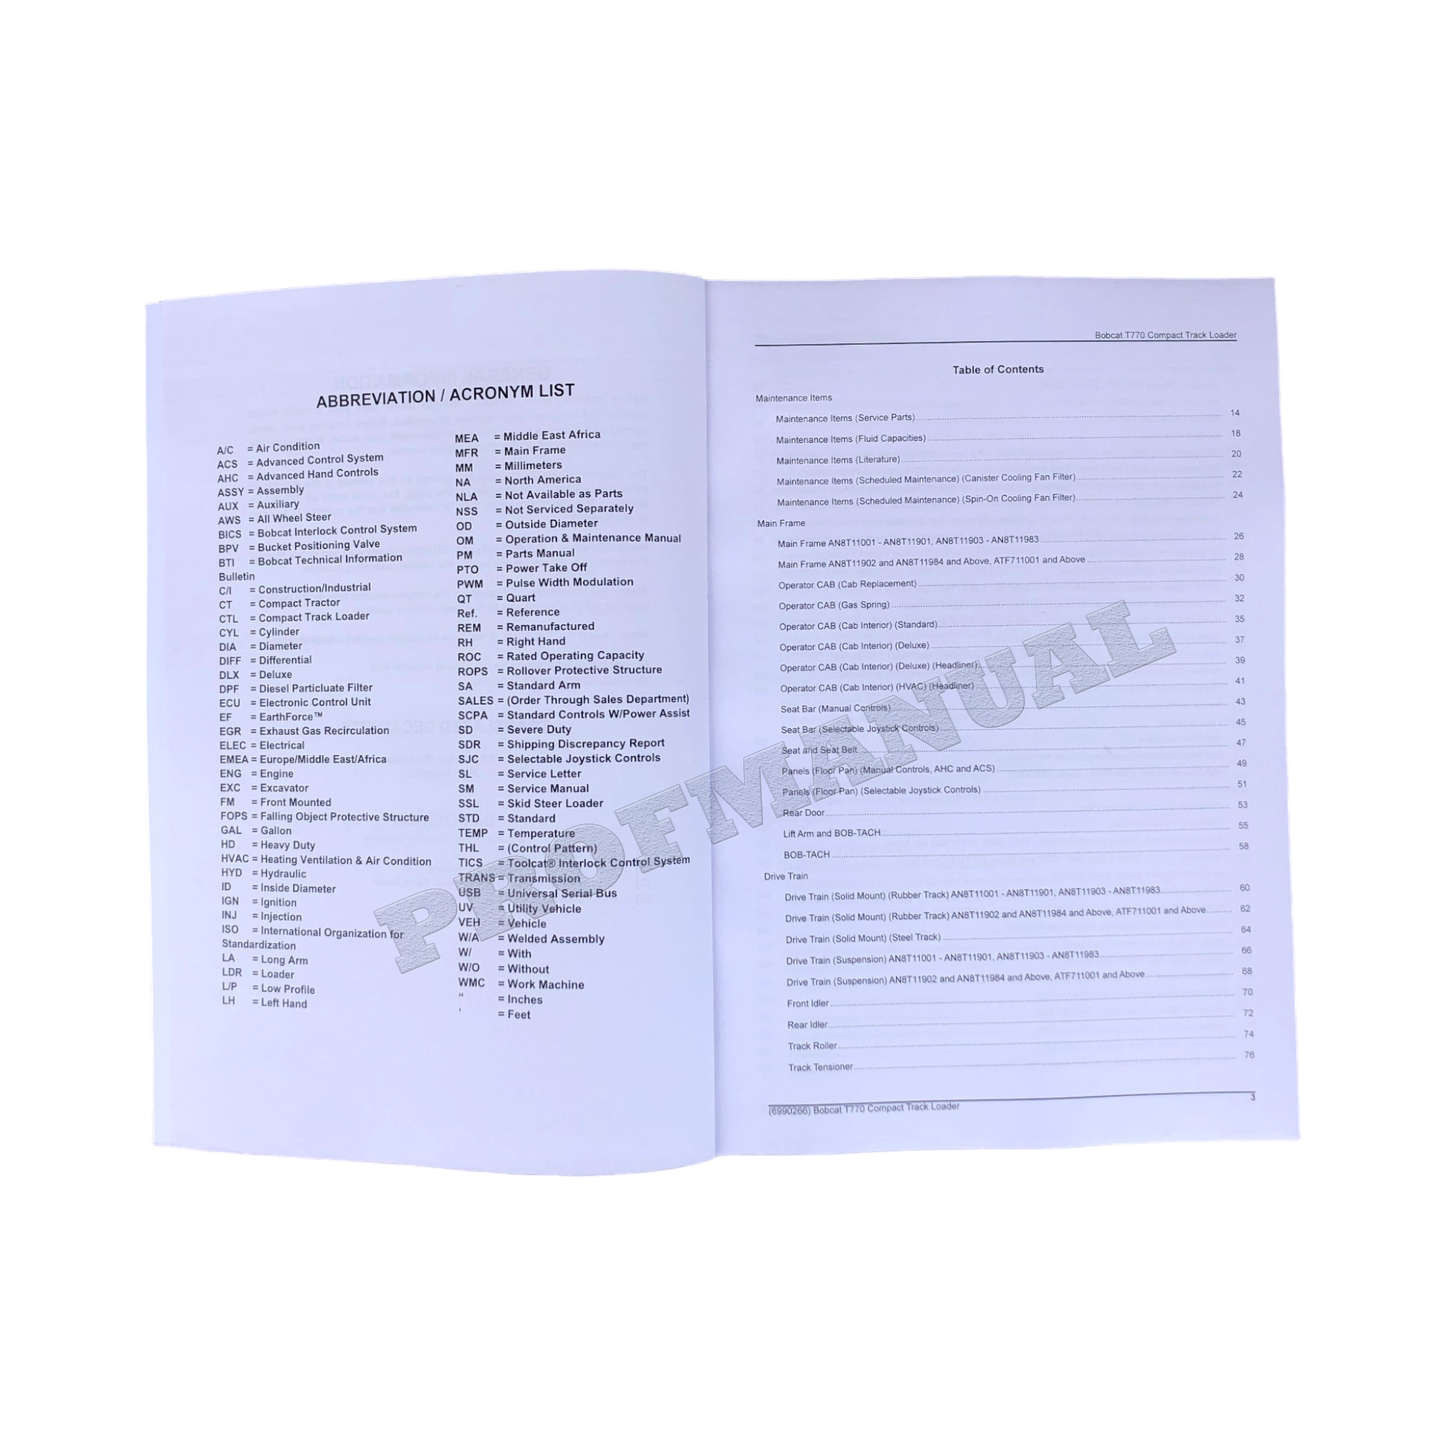 Bobcat T770 Compact Track Loader Parts Catalog Manual AN8T11001- ATF711001-